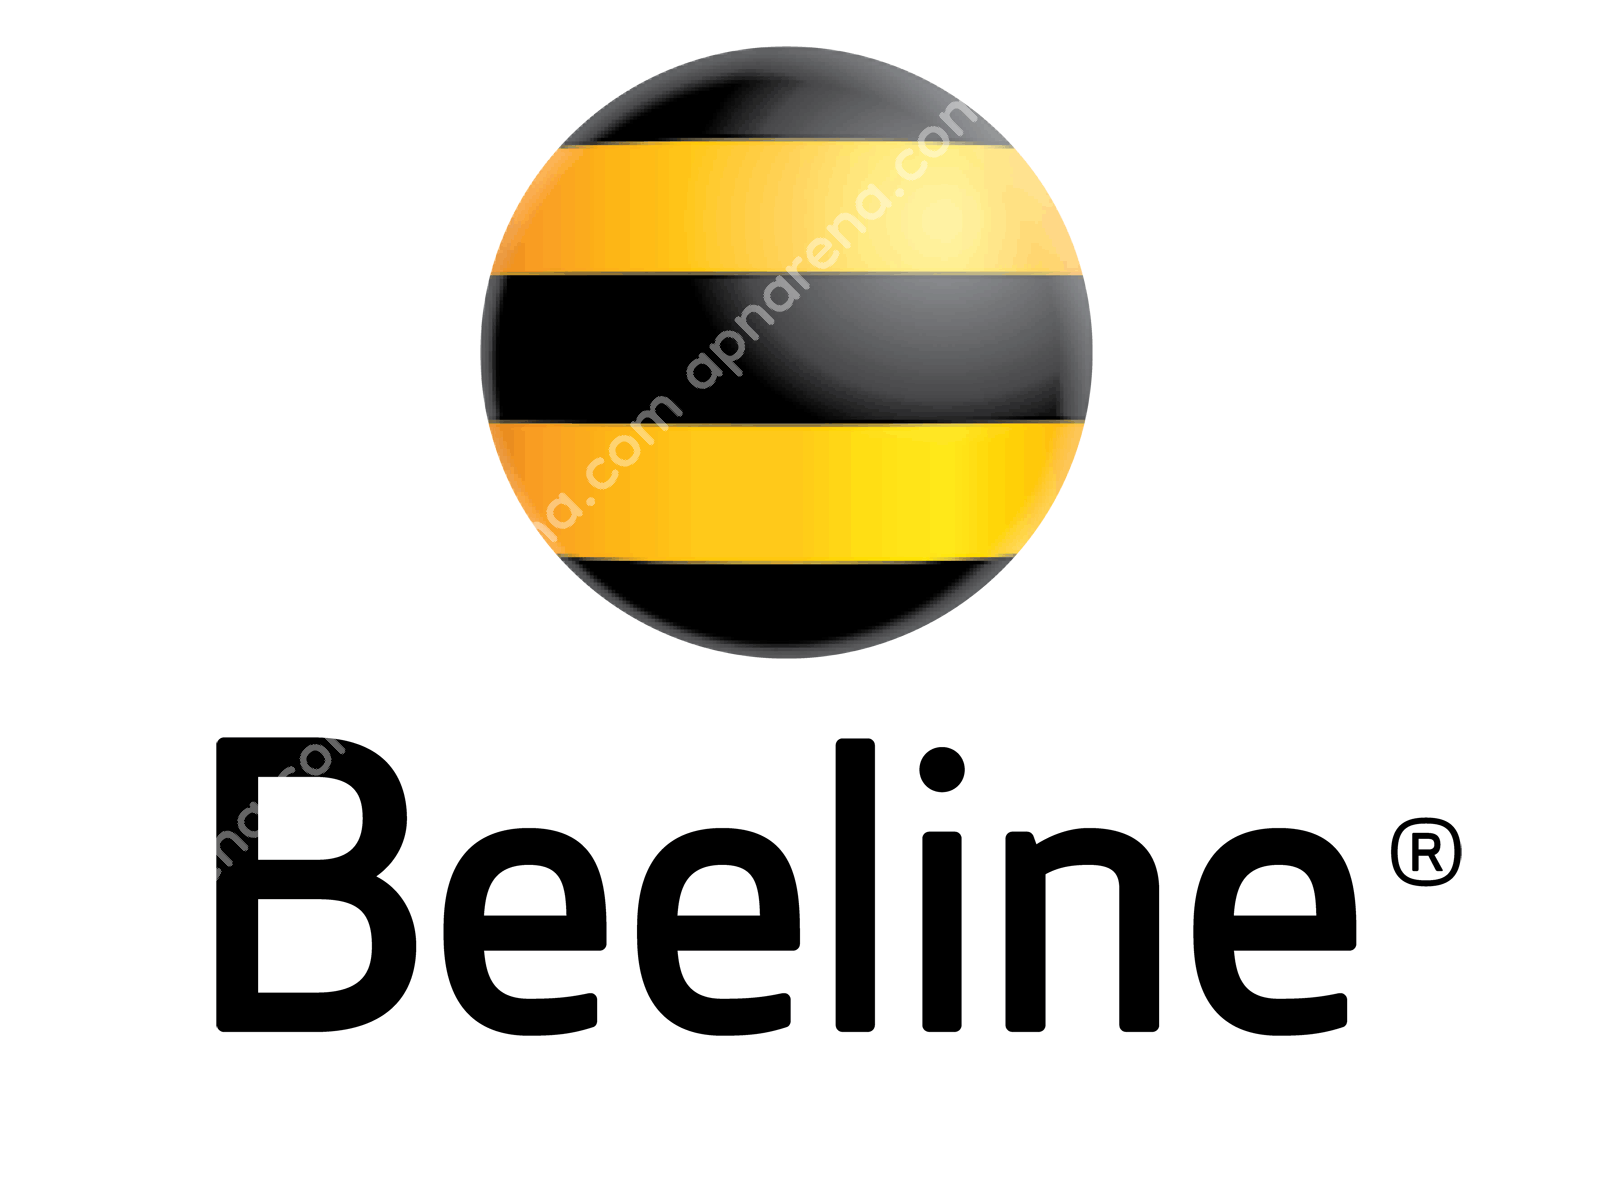 Beeline Armenia APN Internet Settings Android iPhone